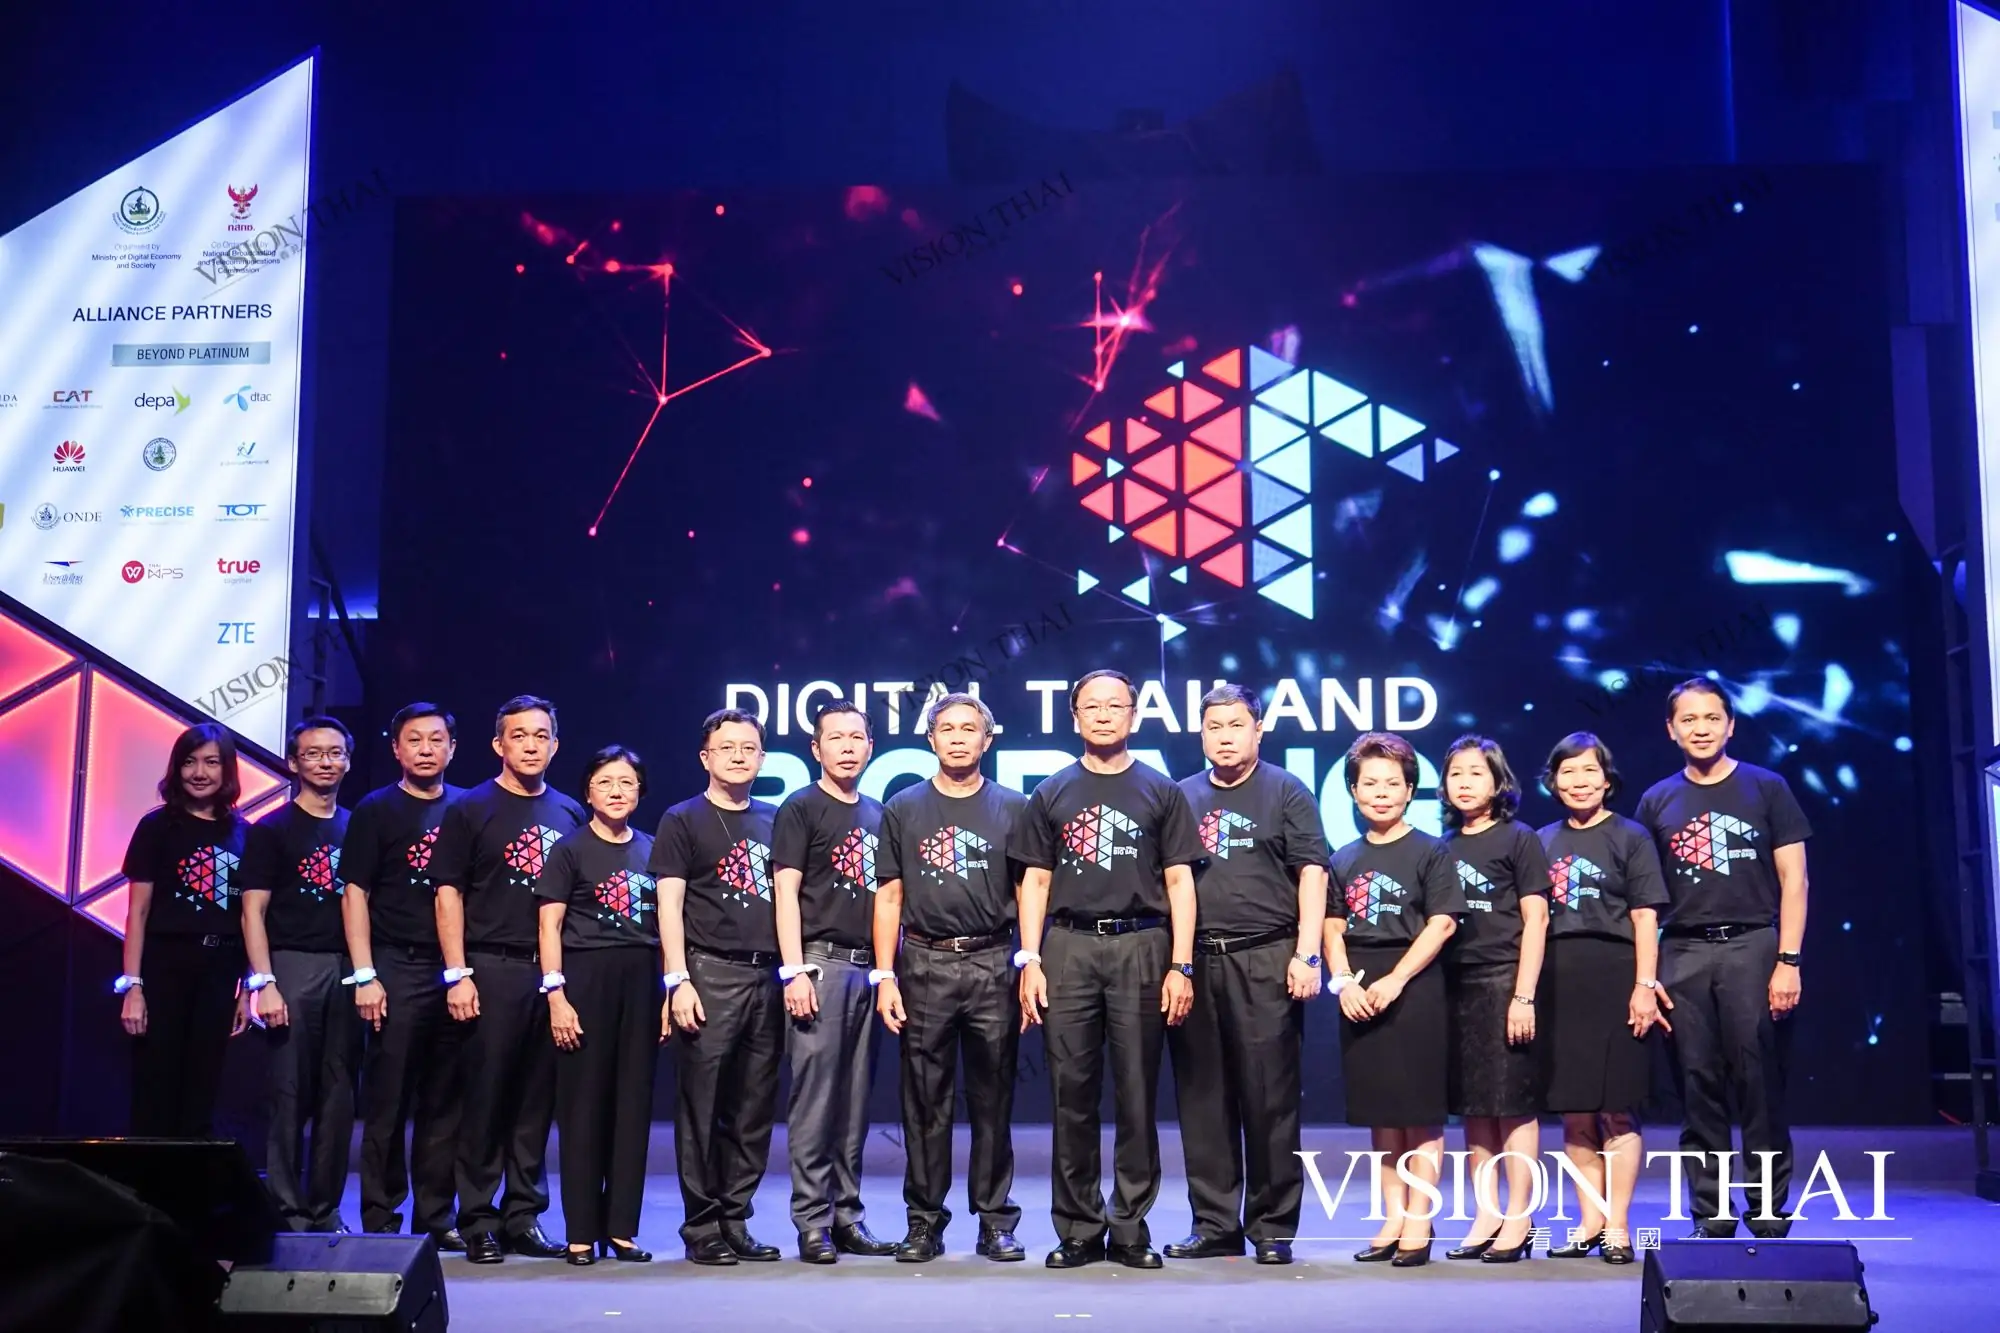 digital-thailand-big-bang-2017-impact